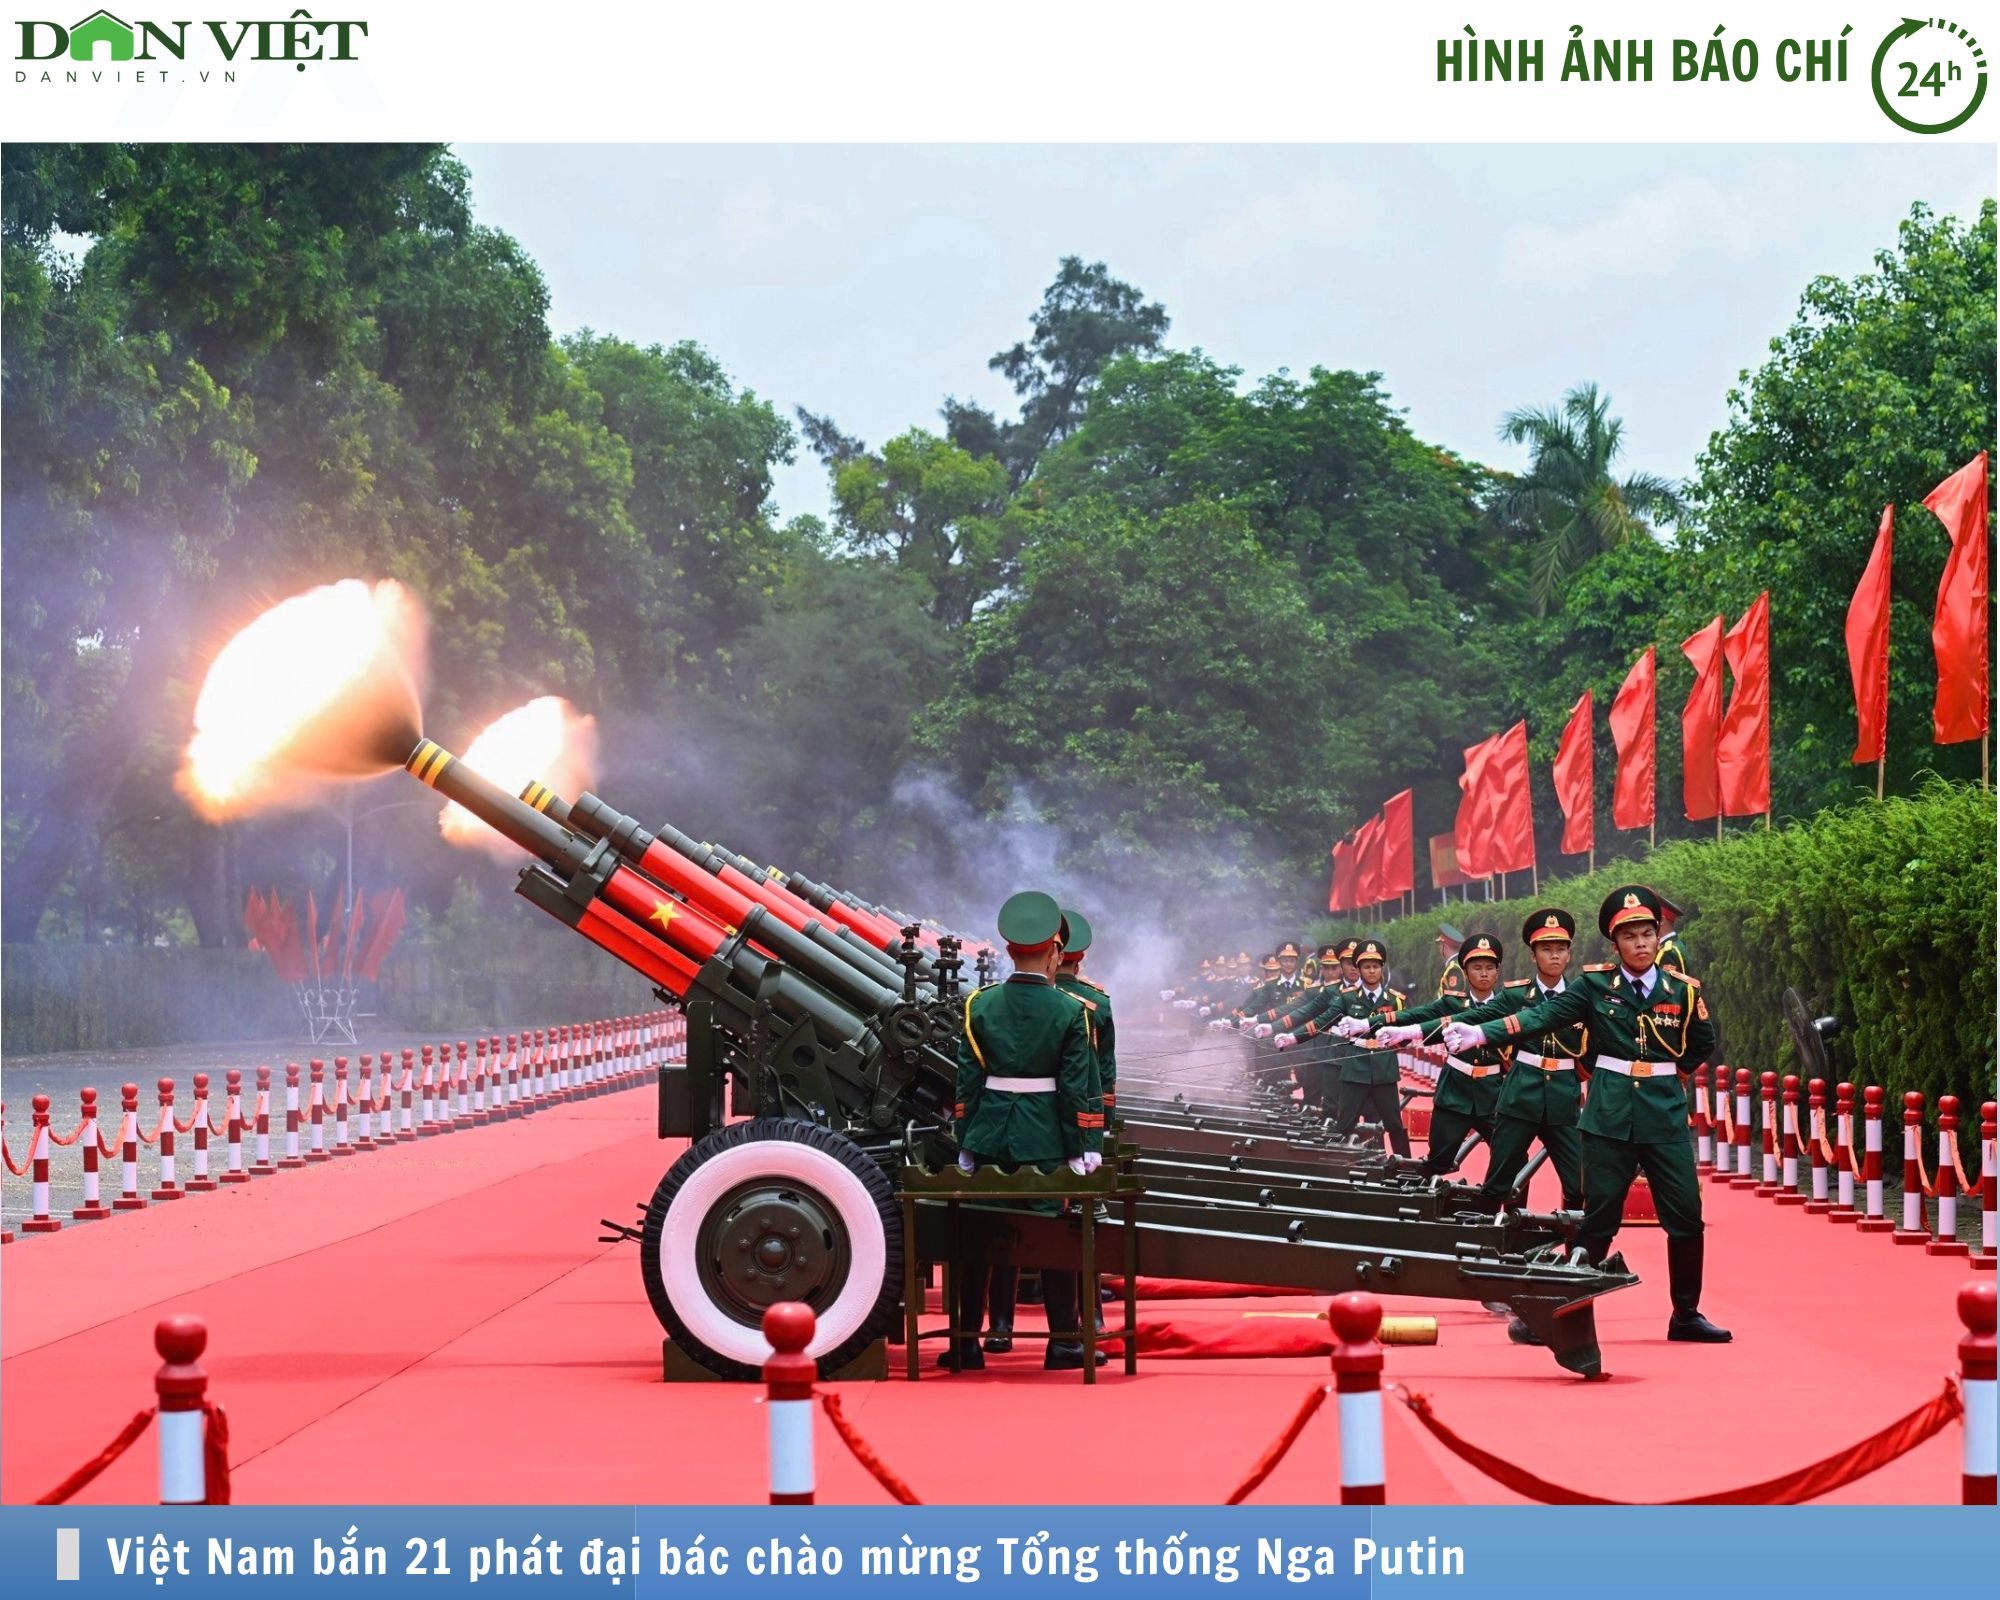 Hình ảnh báo chí 24h: Việt Nam bắn 21 phát đại bác chào mừng Tổng thống Nga Putin- Ảnh 1.